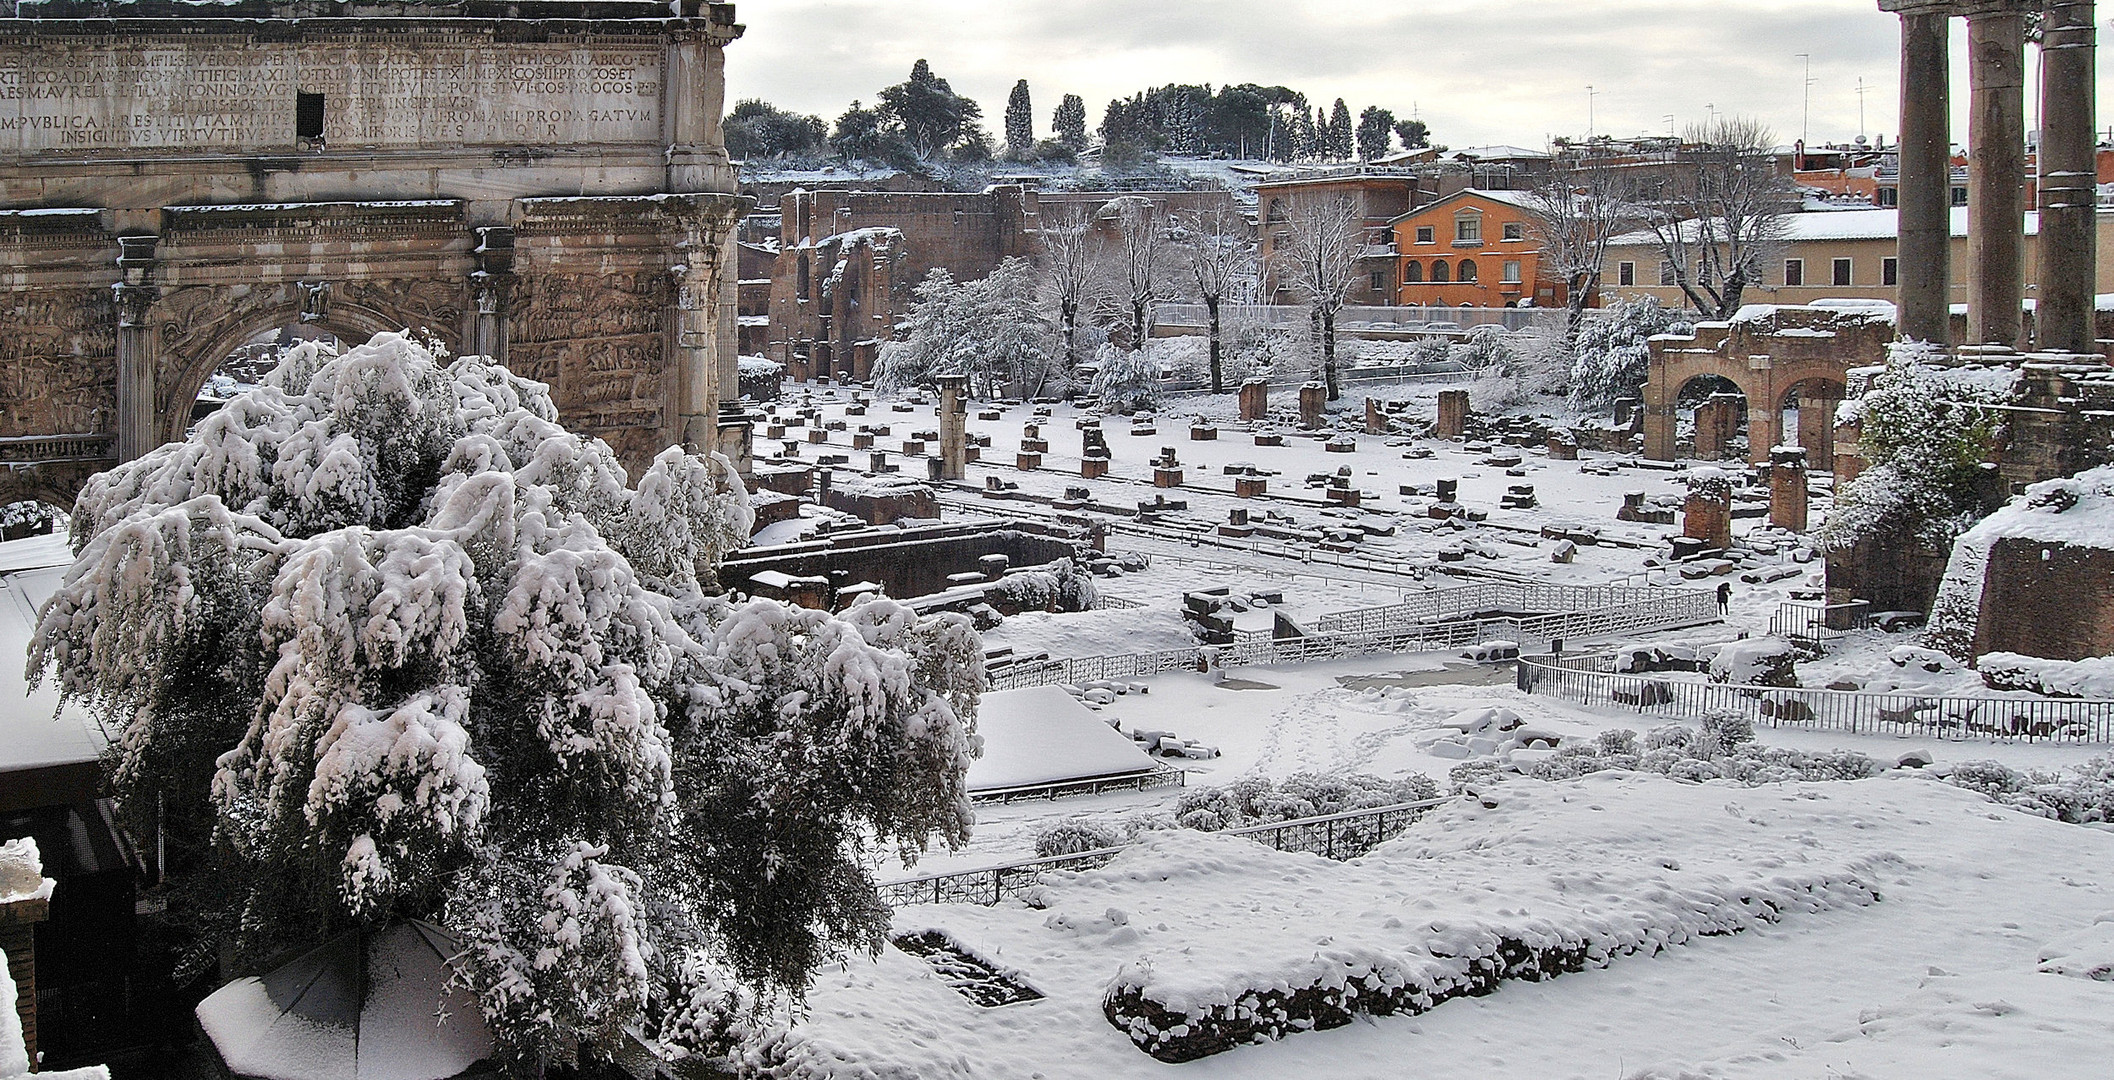 Roma: "Il Foro Romano e il Palatino sotto la neve"